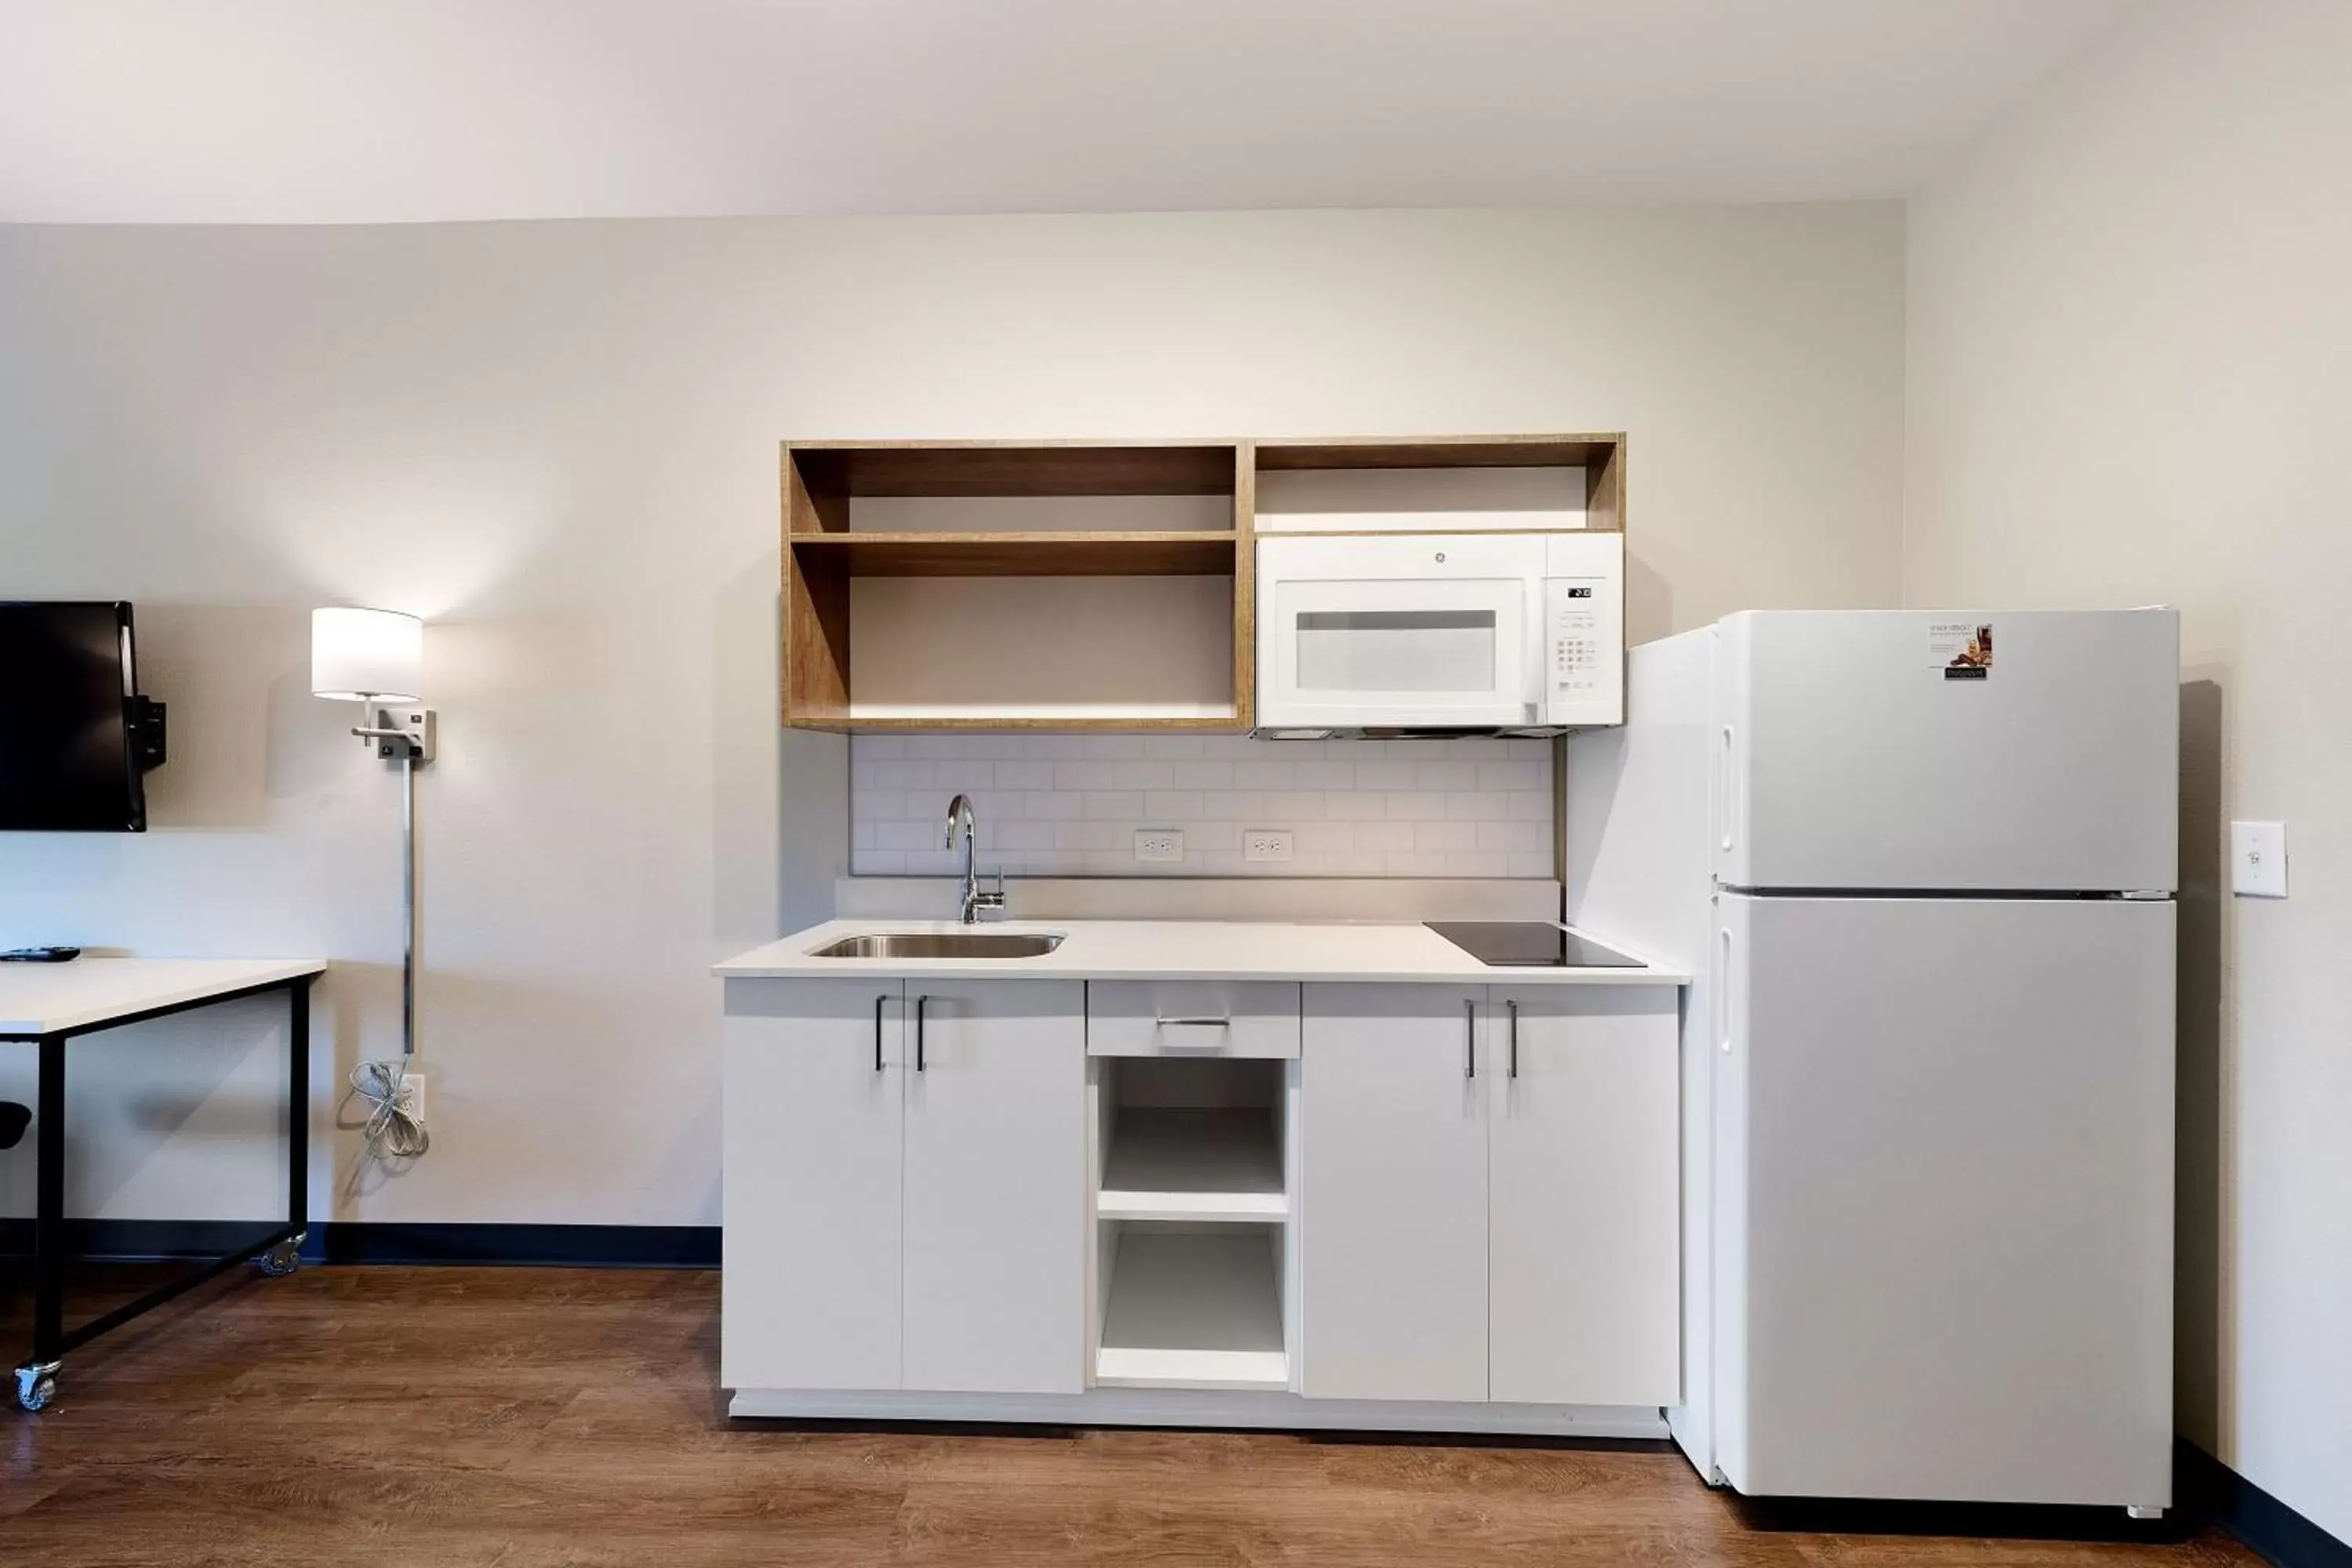 Kitchen or kitchenette, Kitchen/Kitchenette in Extended Stay America Premier Suites - Savannah - Pooler